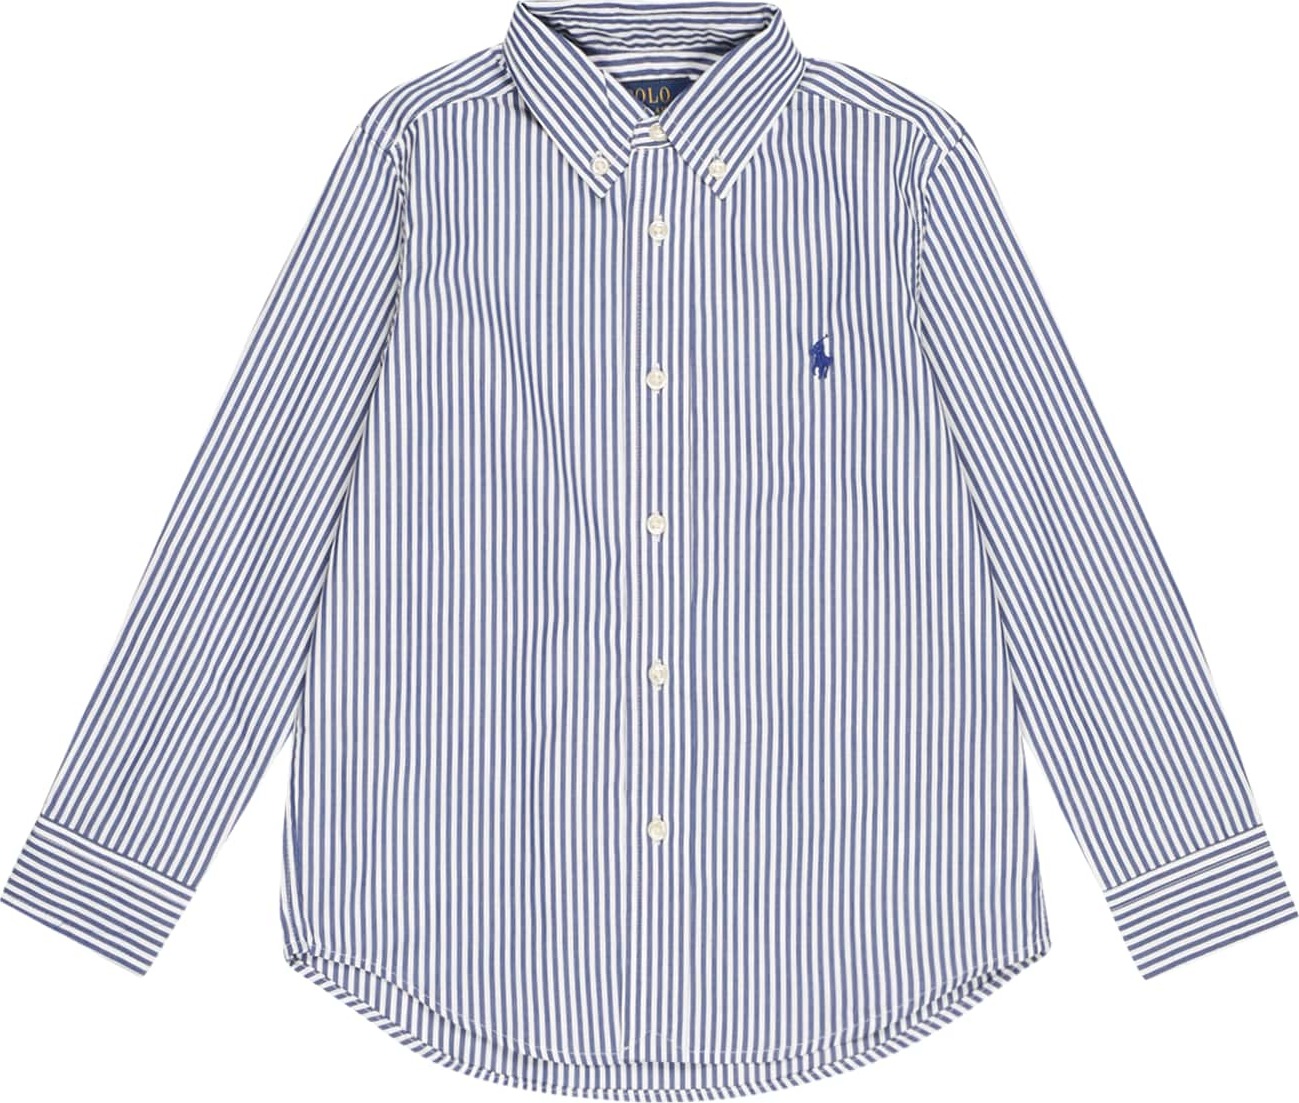 Košile Polo Ralph Lauren námořnická modř / bílá